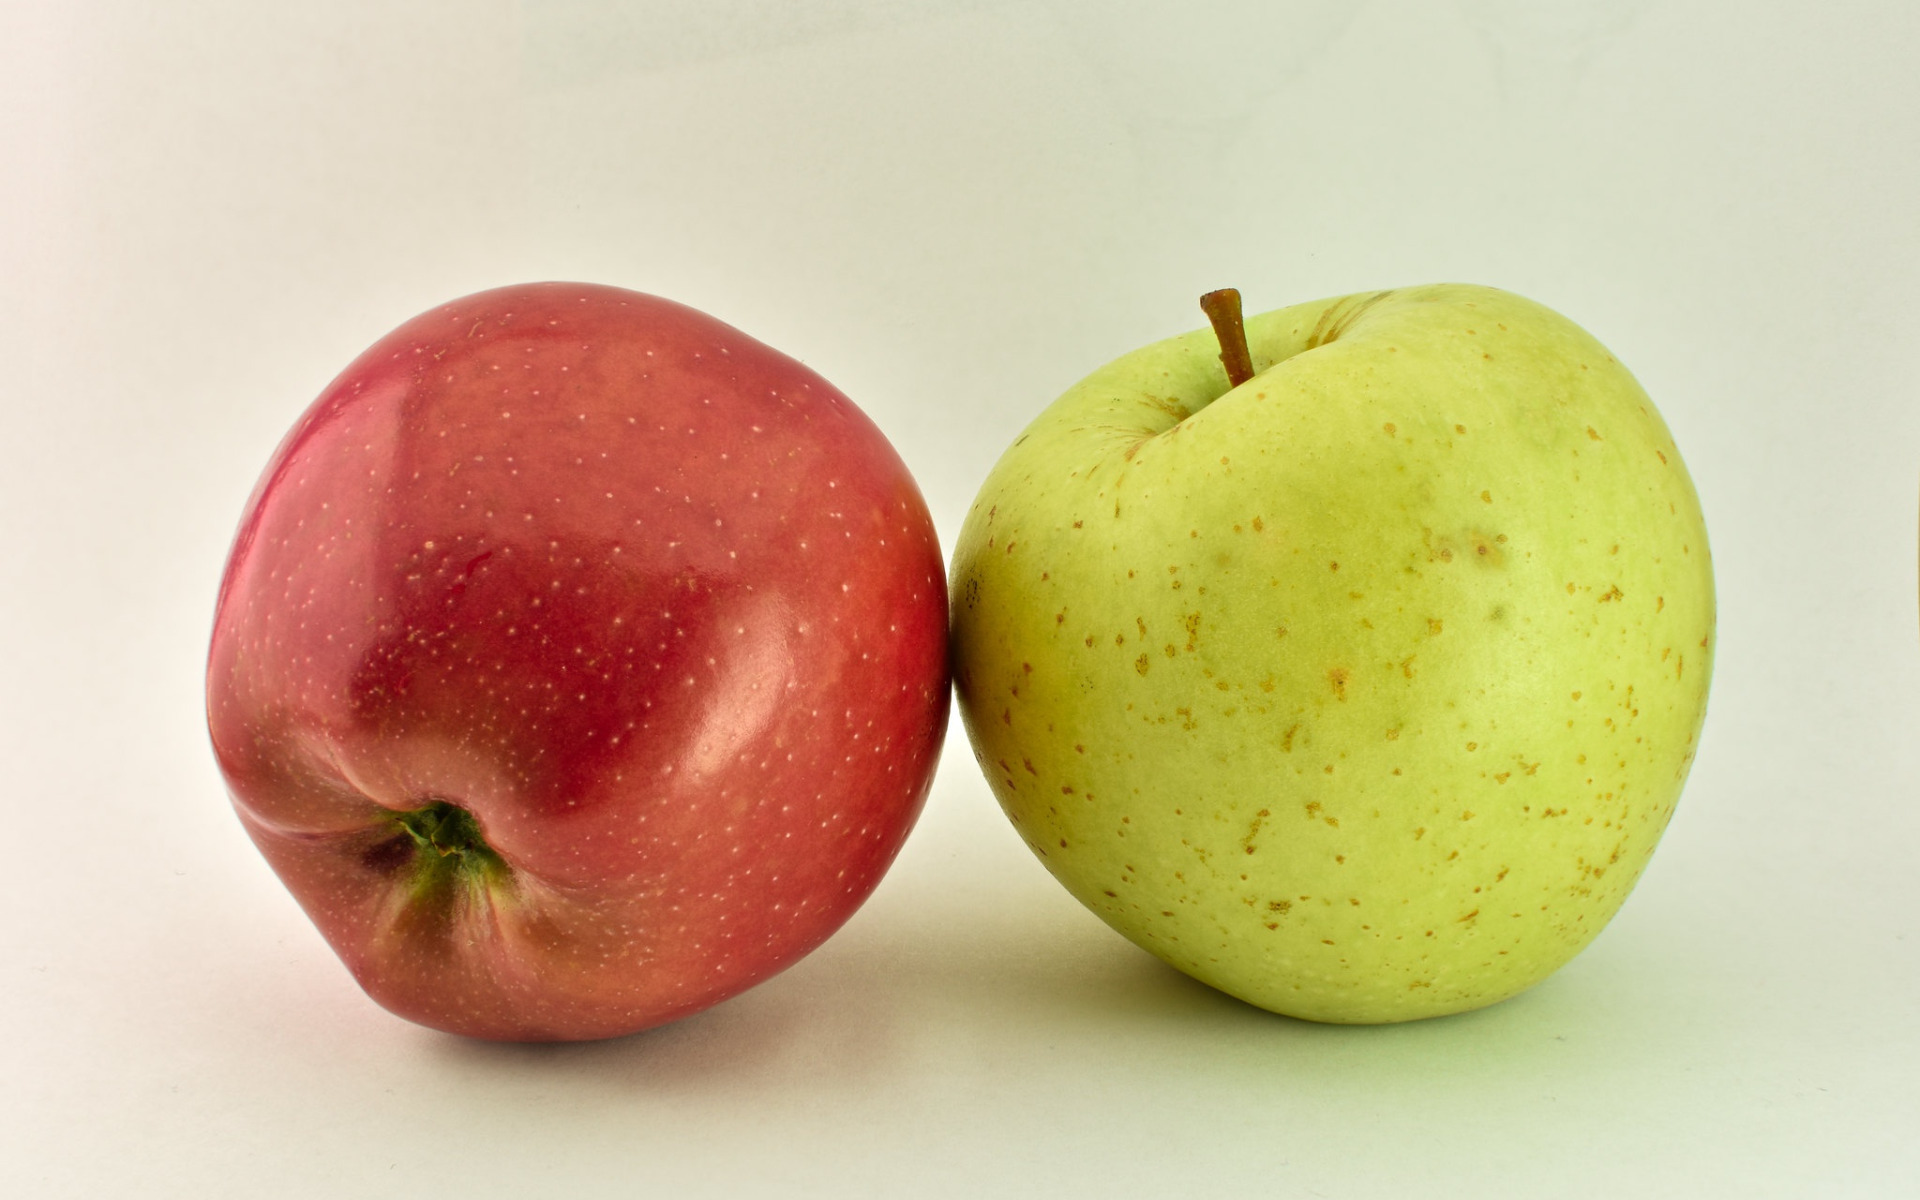 Завтрак 2 яблока. Яблоко. Яблоко 2. Разные яблоки. Одно яблоко.